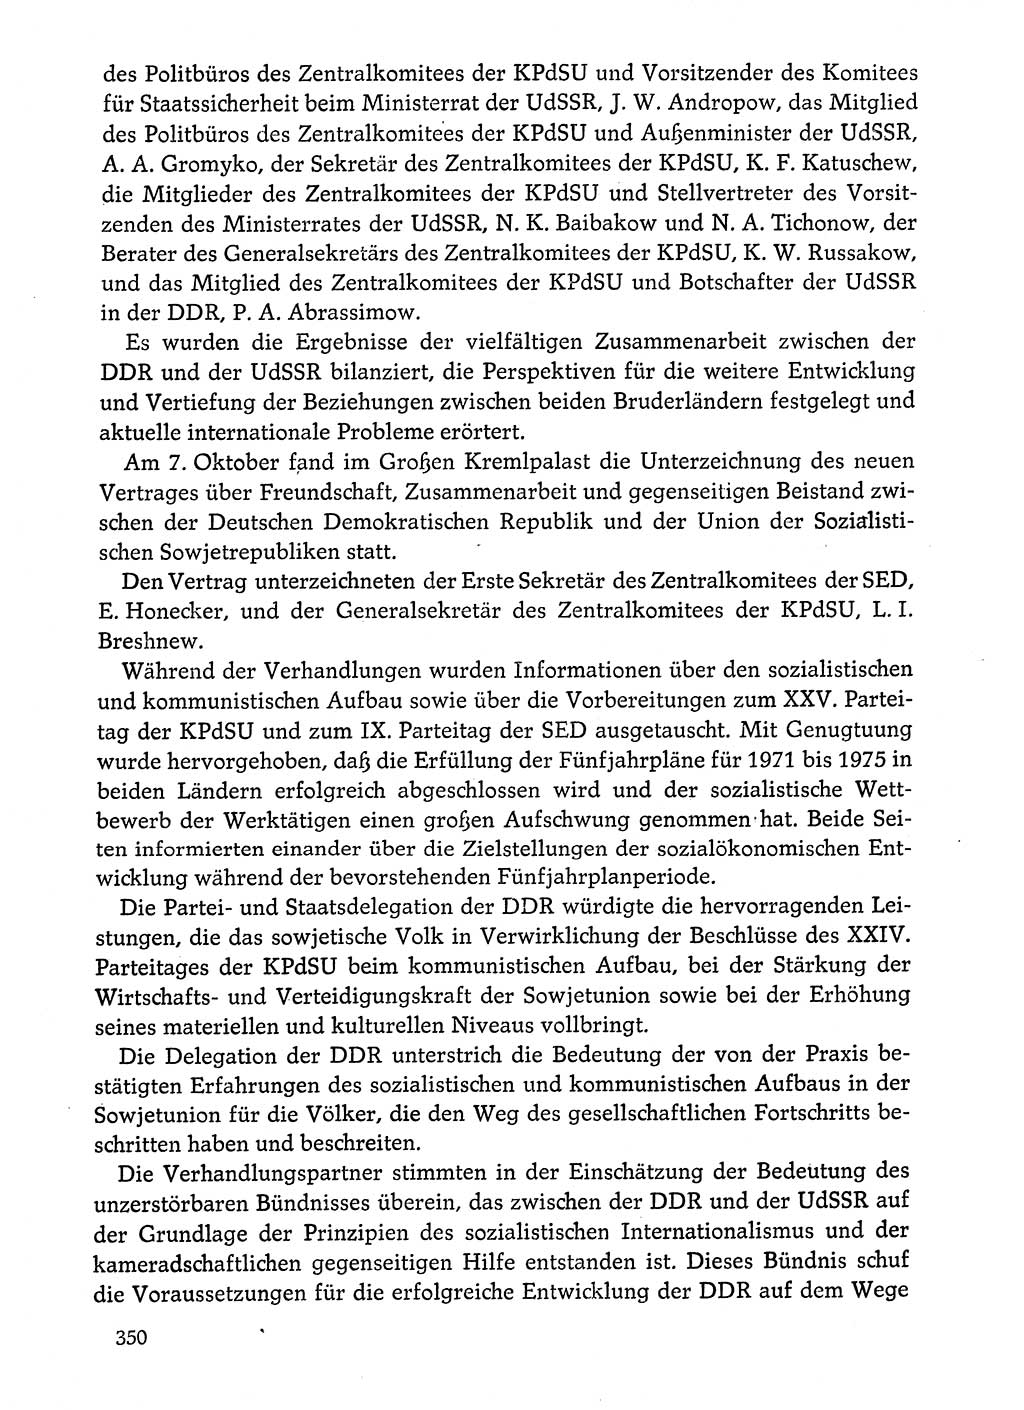 Dokumente der Sozialistischen Einheitspartei Deutschlands (SED) [Deutsche Demokratische Republik (DDR)] 1974-1975, Seite 350 (Dok. SED DDR 1978, Bd. ⅩⅤ, S. 350)